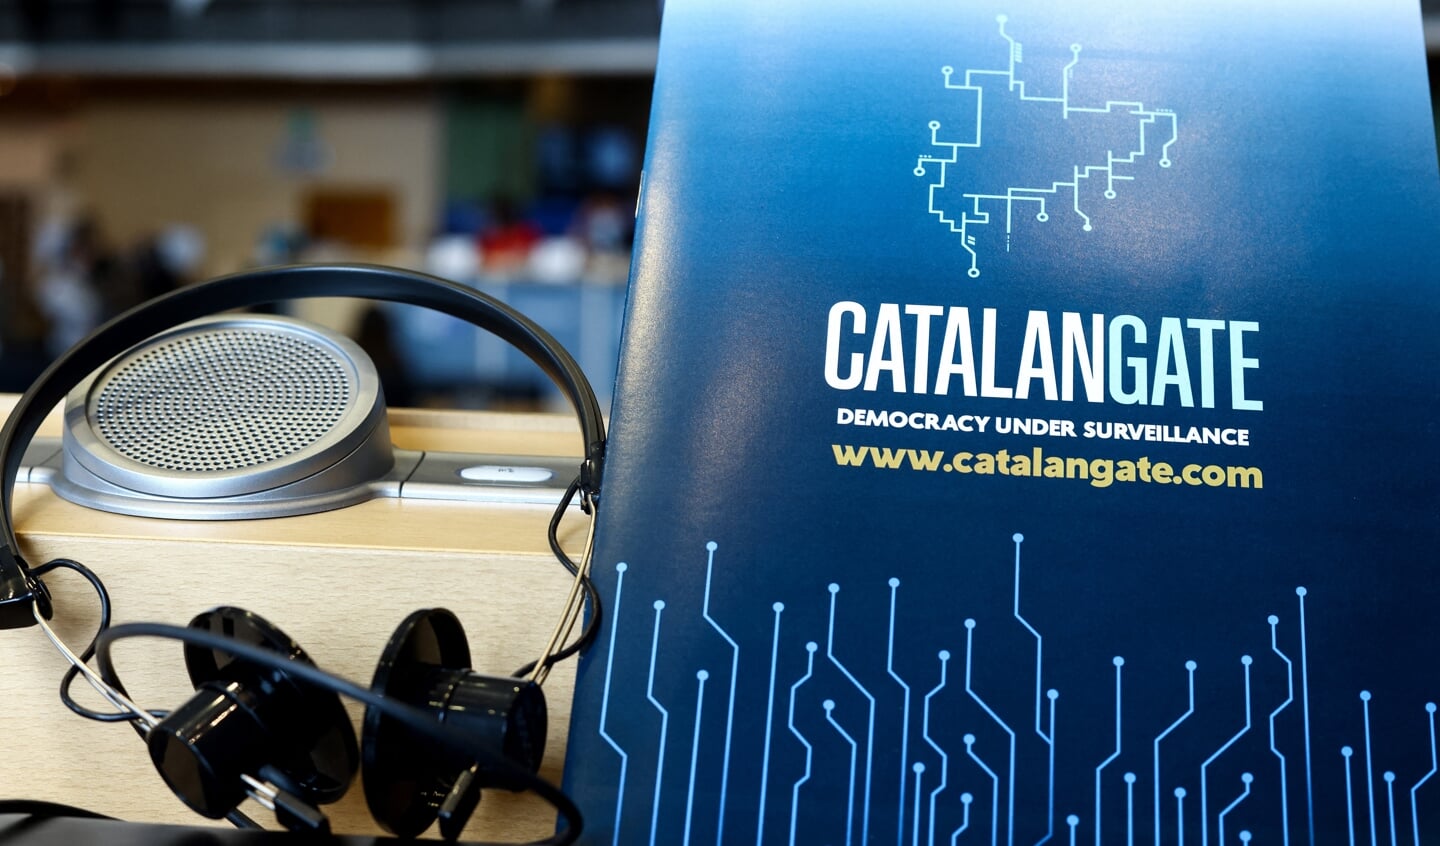 Op 19 april werd in het Europees Parlement in Brussel een rapport over de spionageactiviteiten in Spanje gepresenteerd onder de titel Catalangate.